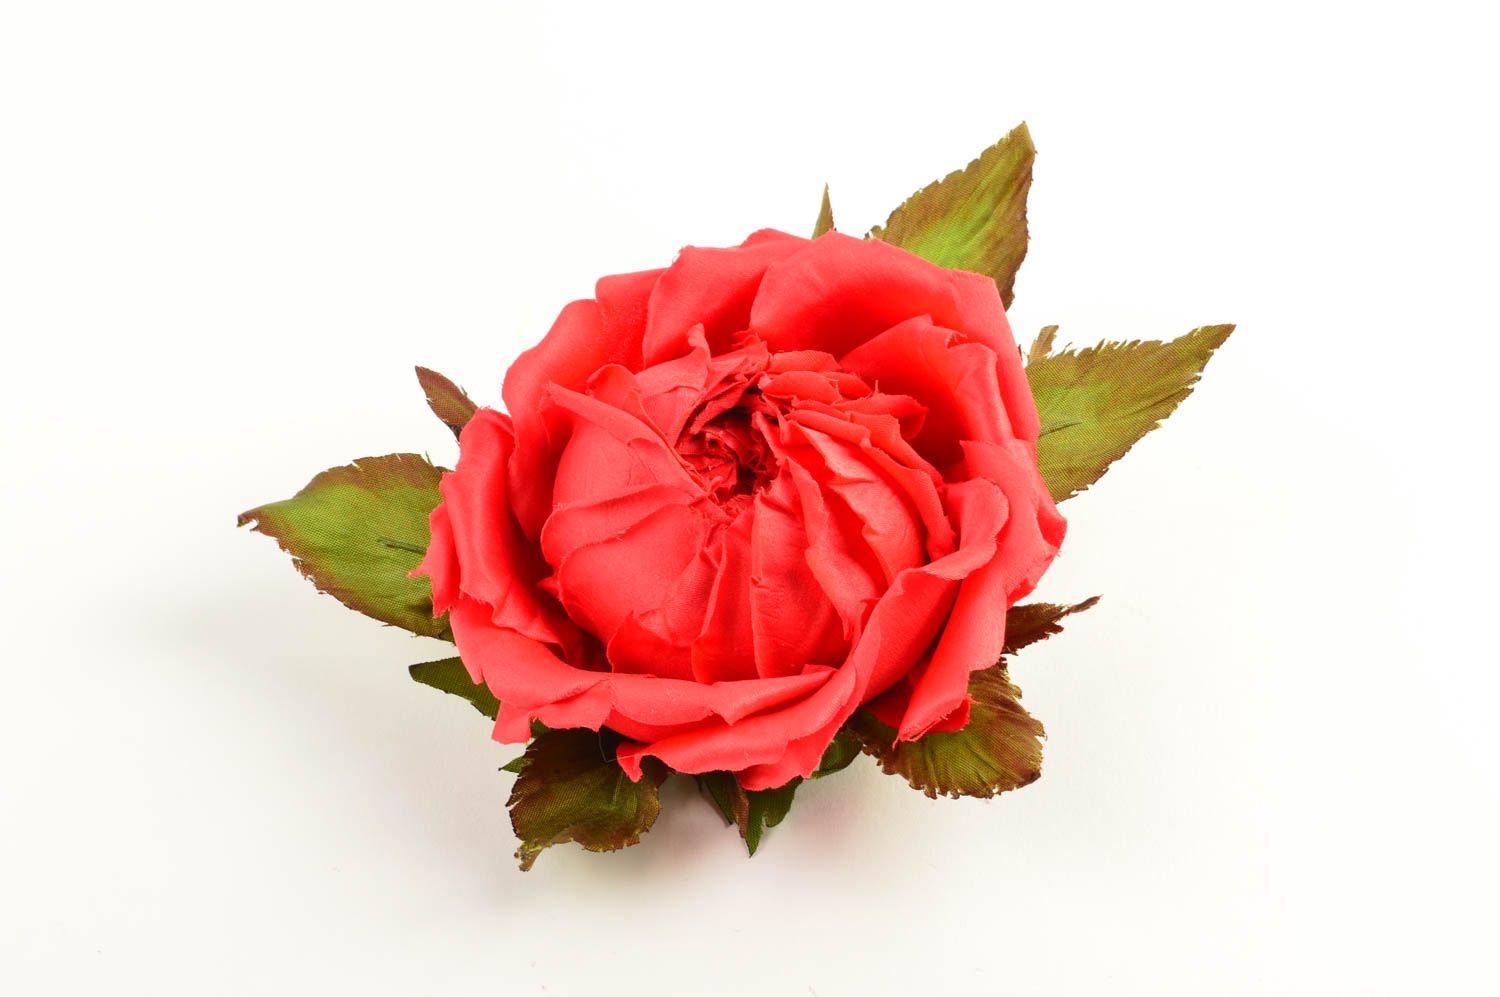 Брошь из шелка хэнд мэйд брошь-заколка красная роза авторская бижутерия фото 2